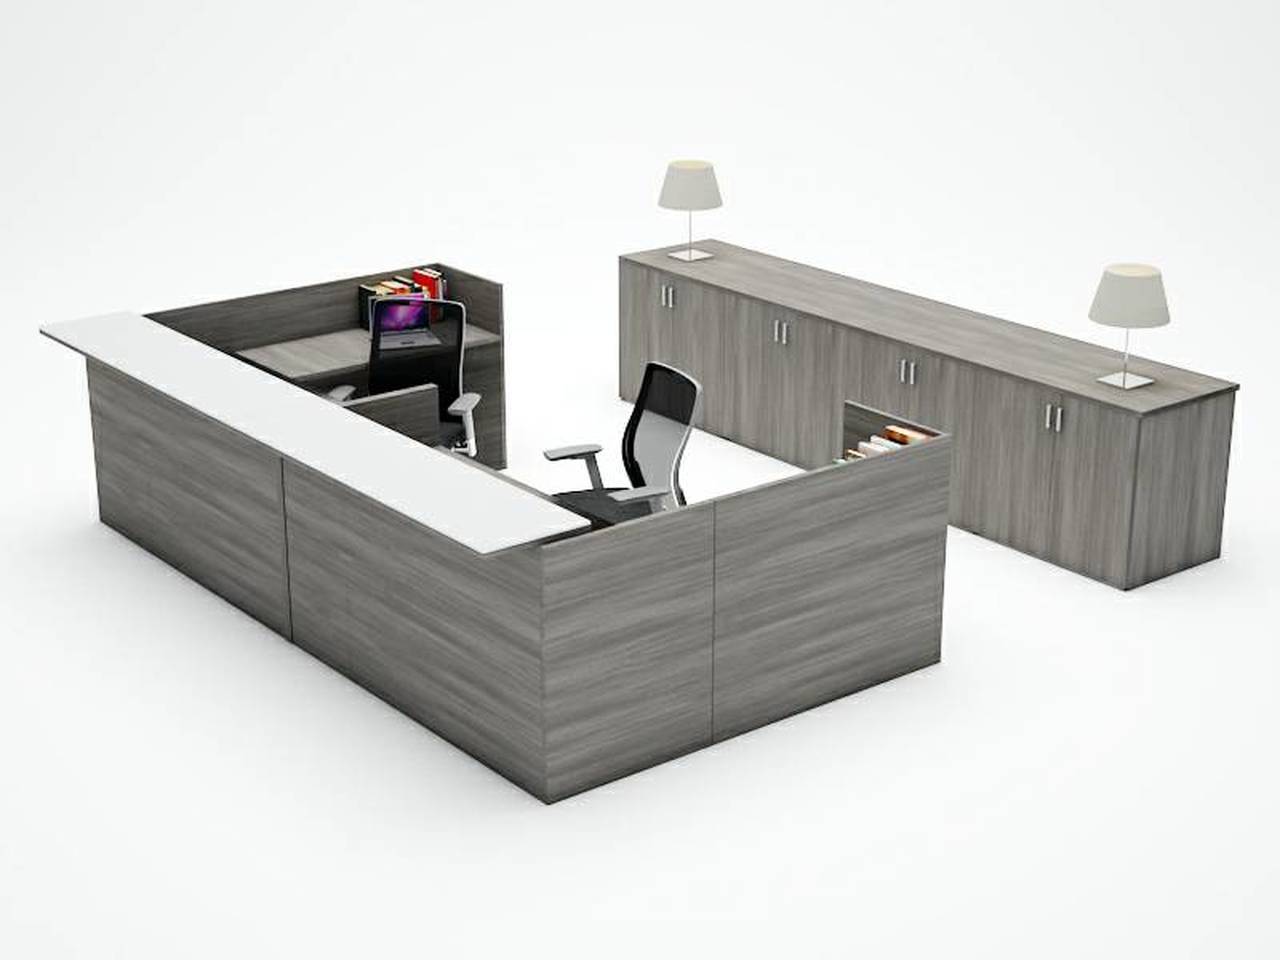 Reception Desks - Page 1 - Neox Modern Furniture